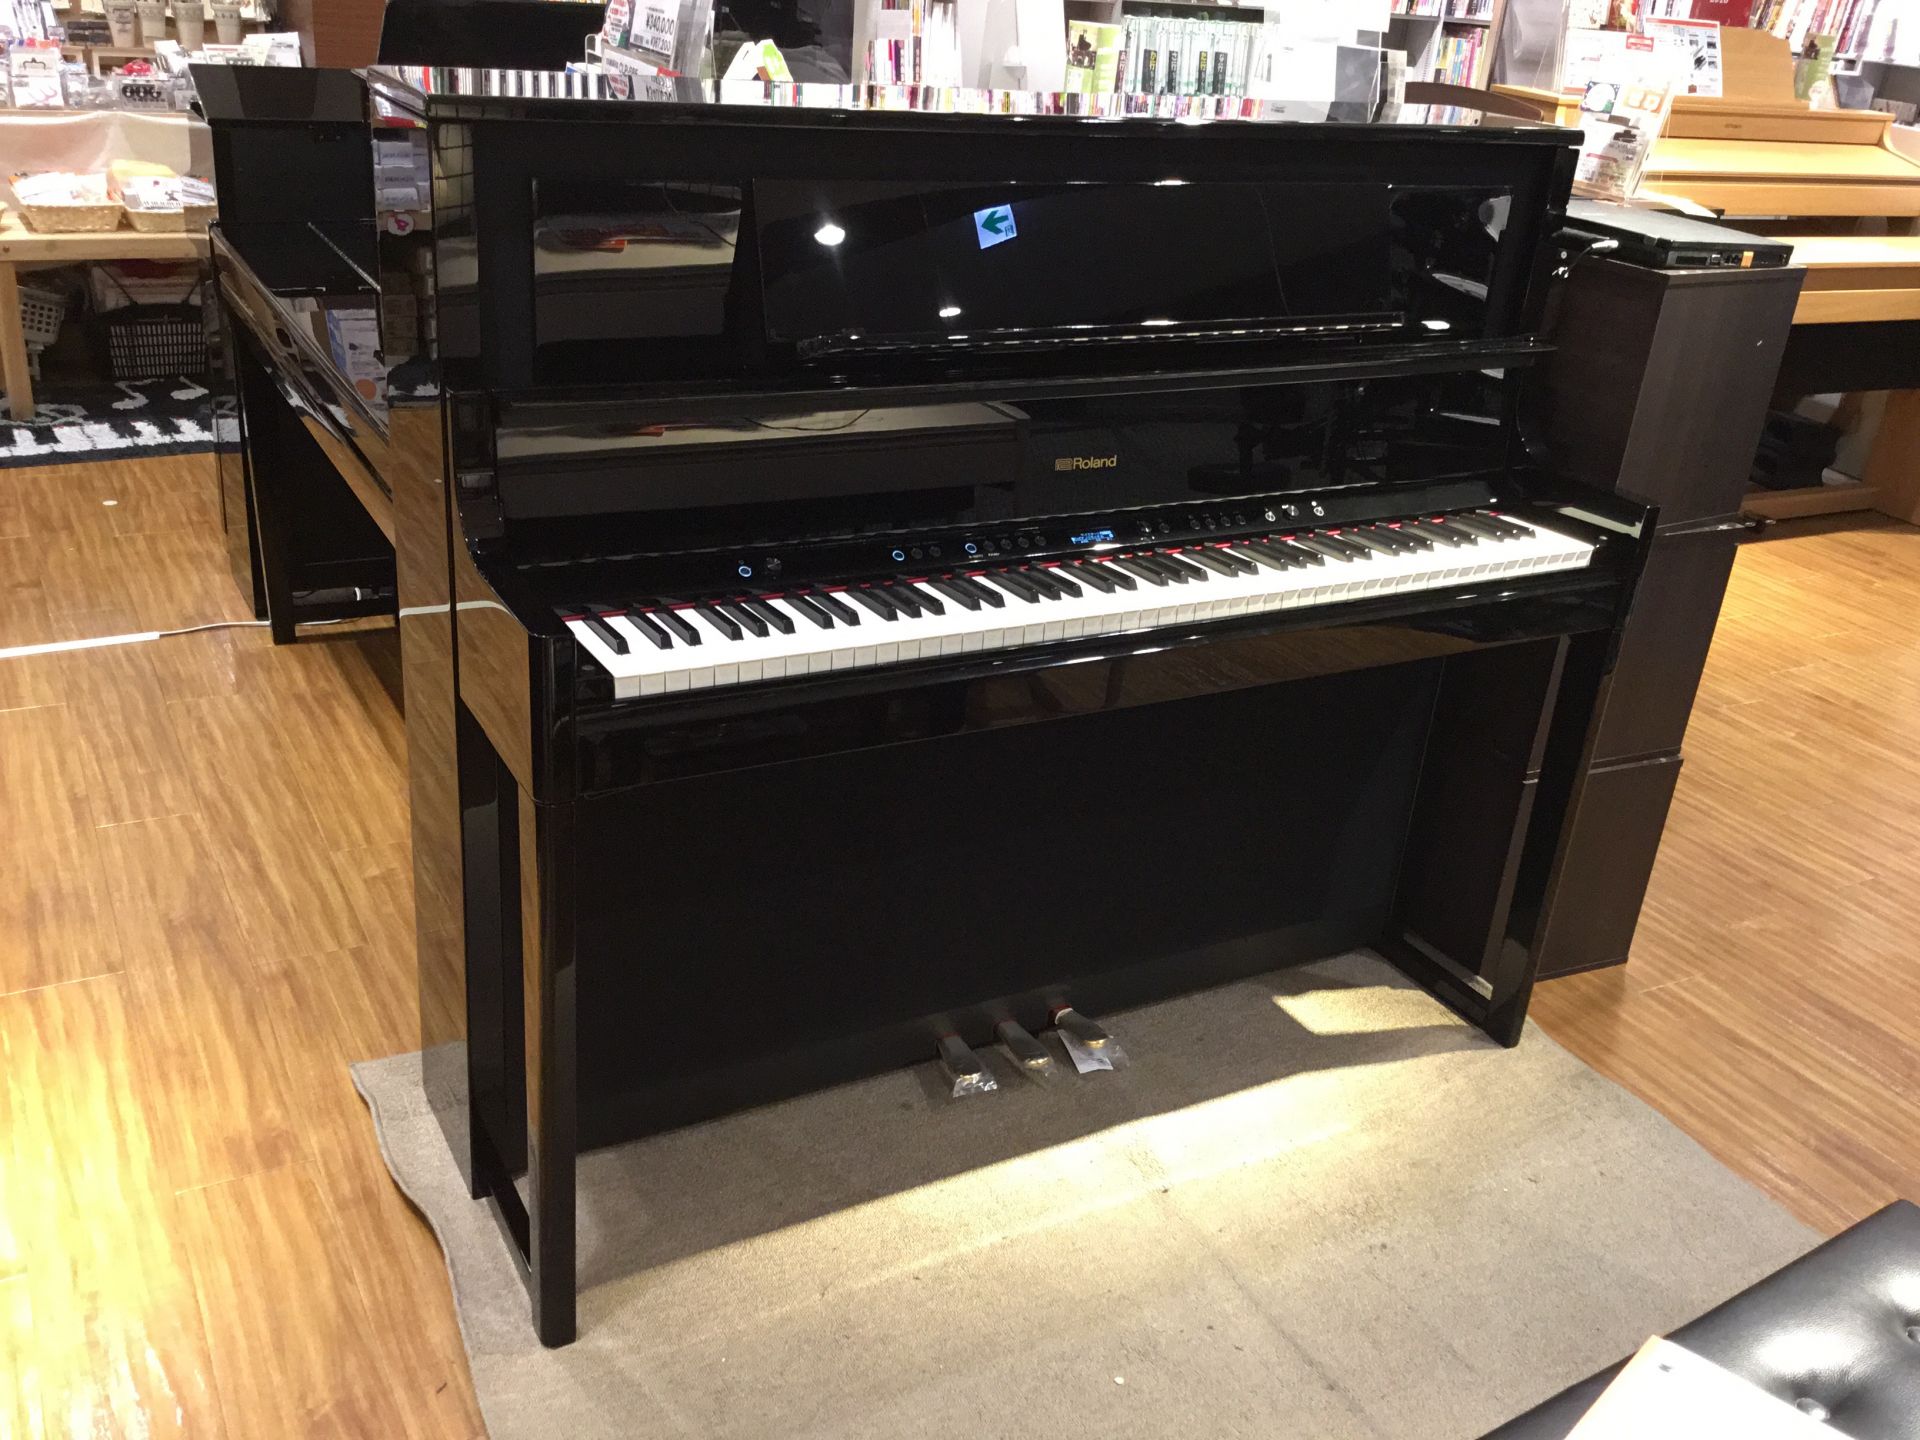 *ローランド新製品LX708入荷いたしました！ もちろん店頭でお試しいただけます！スタッフからご説明もいたします！お客様のご来店を心よりお待ちしております。 ***LX700シリーズ最上位機種がついに桂川店にやってきました。 高さ約120cmという圧巻のピアノ感。アップライトピアノのような佇まいです […]